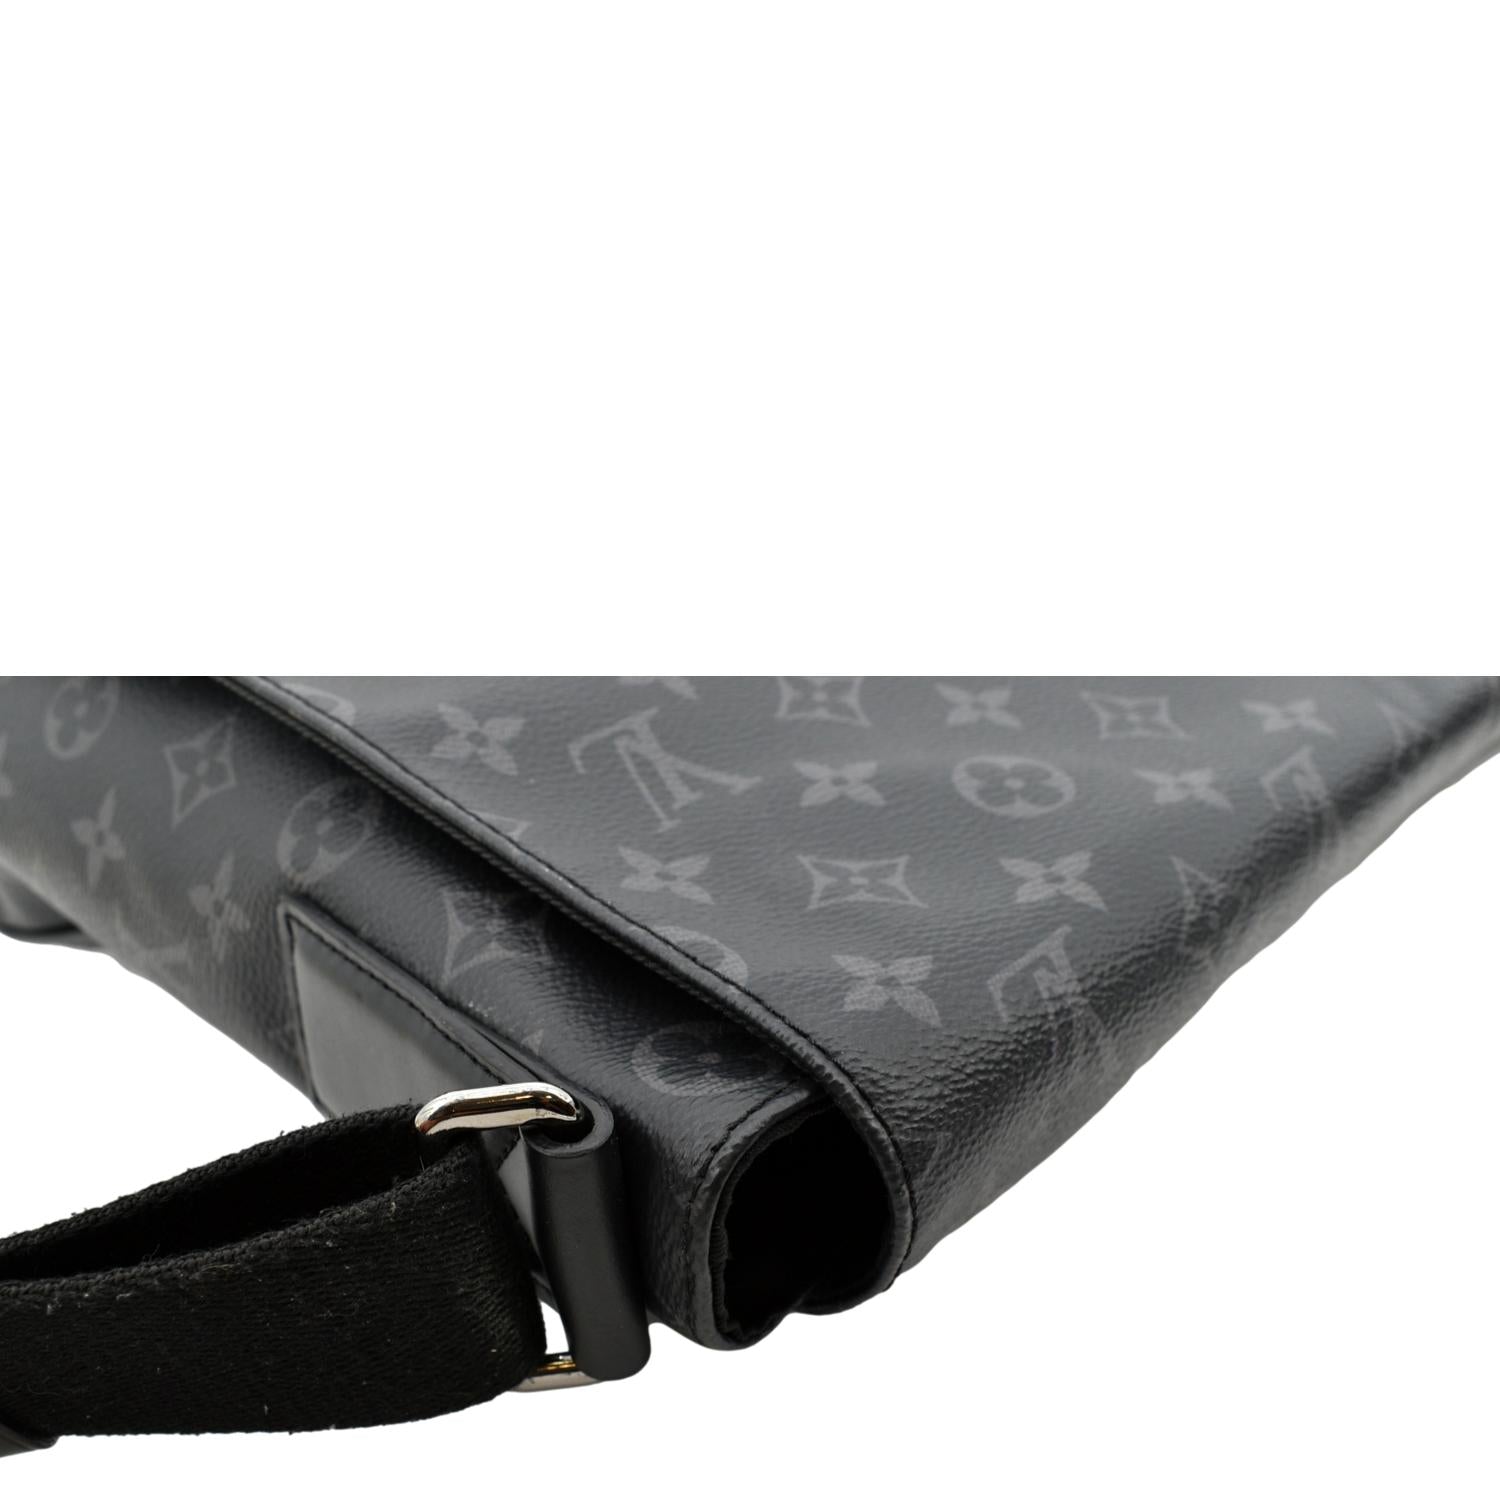 Louis Vuitton - District PM Messenger Bag - Monogram Canvas - Eclipse - Men - Luxury